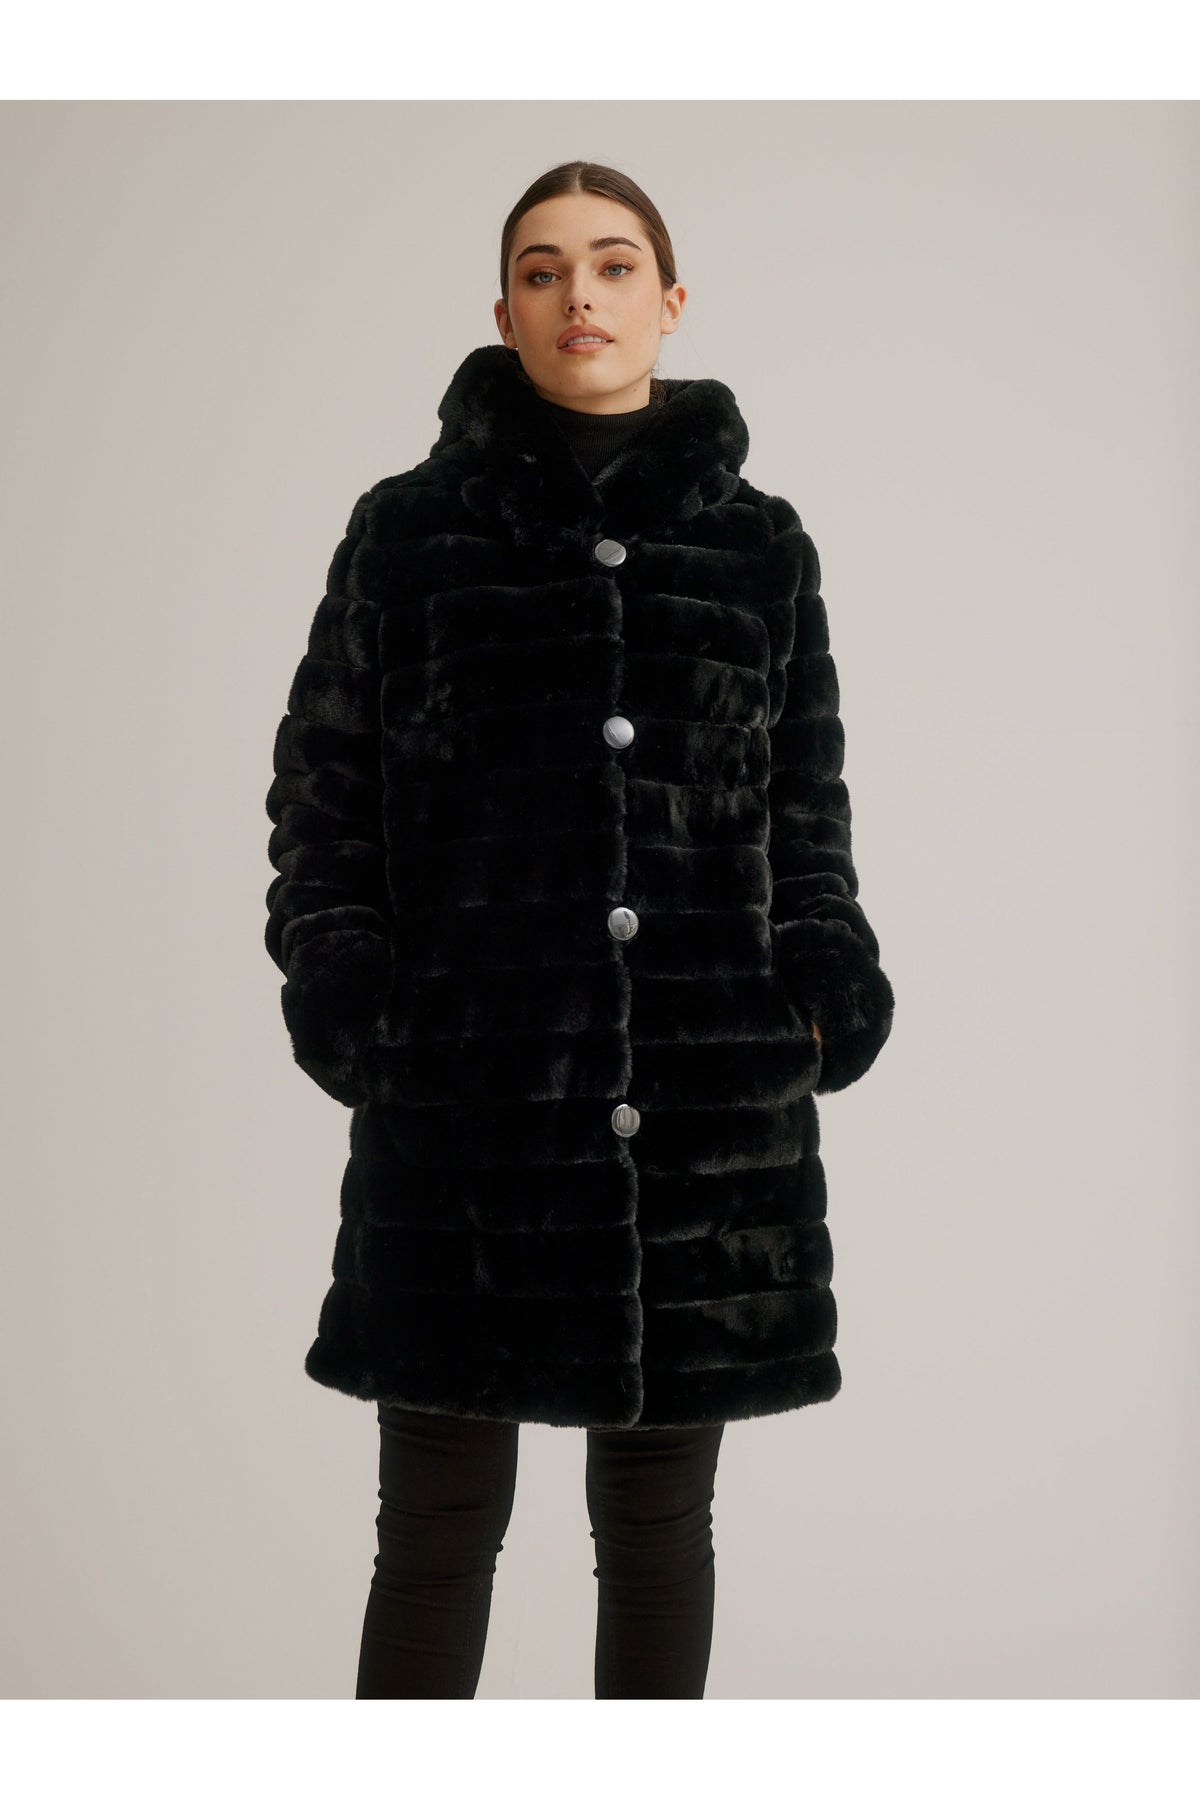 Nikki Jones Reversible Faux Fur Coat - Style K4129RK-164 – Close To You ...